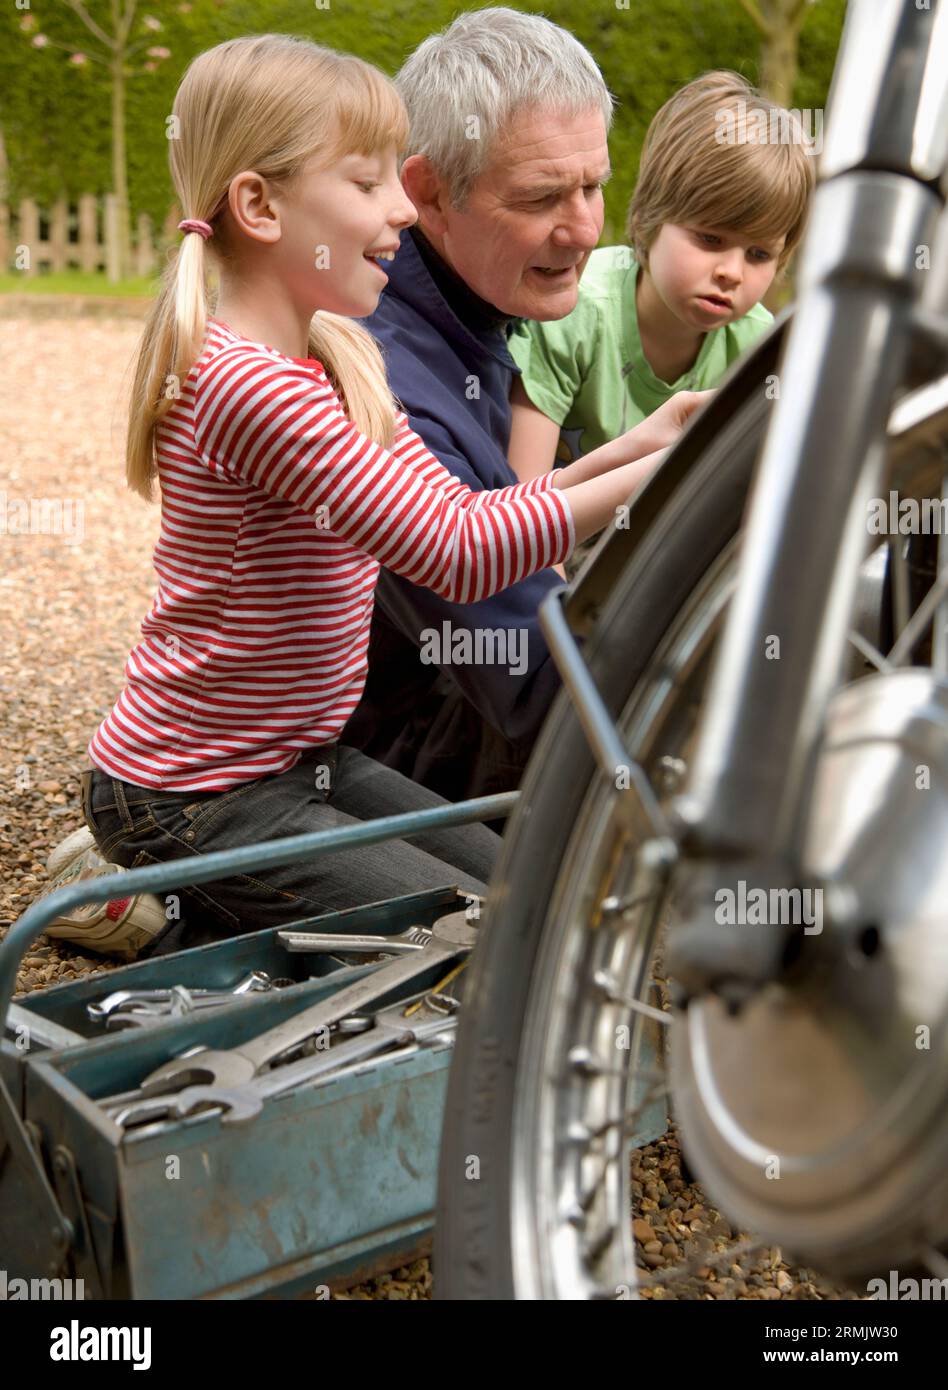 Enkel hilft Großvater Motorrad zu reparieren Stockfoto